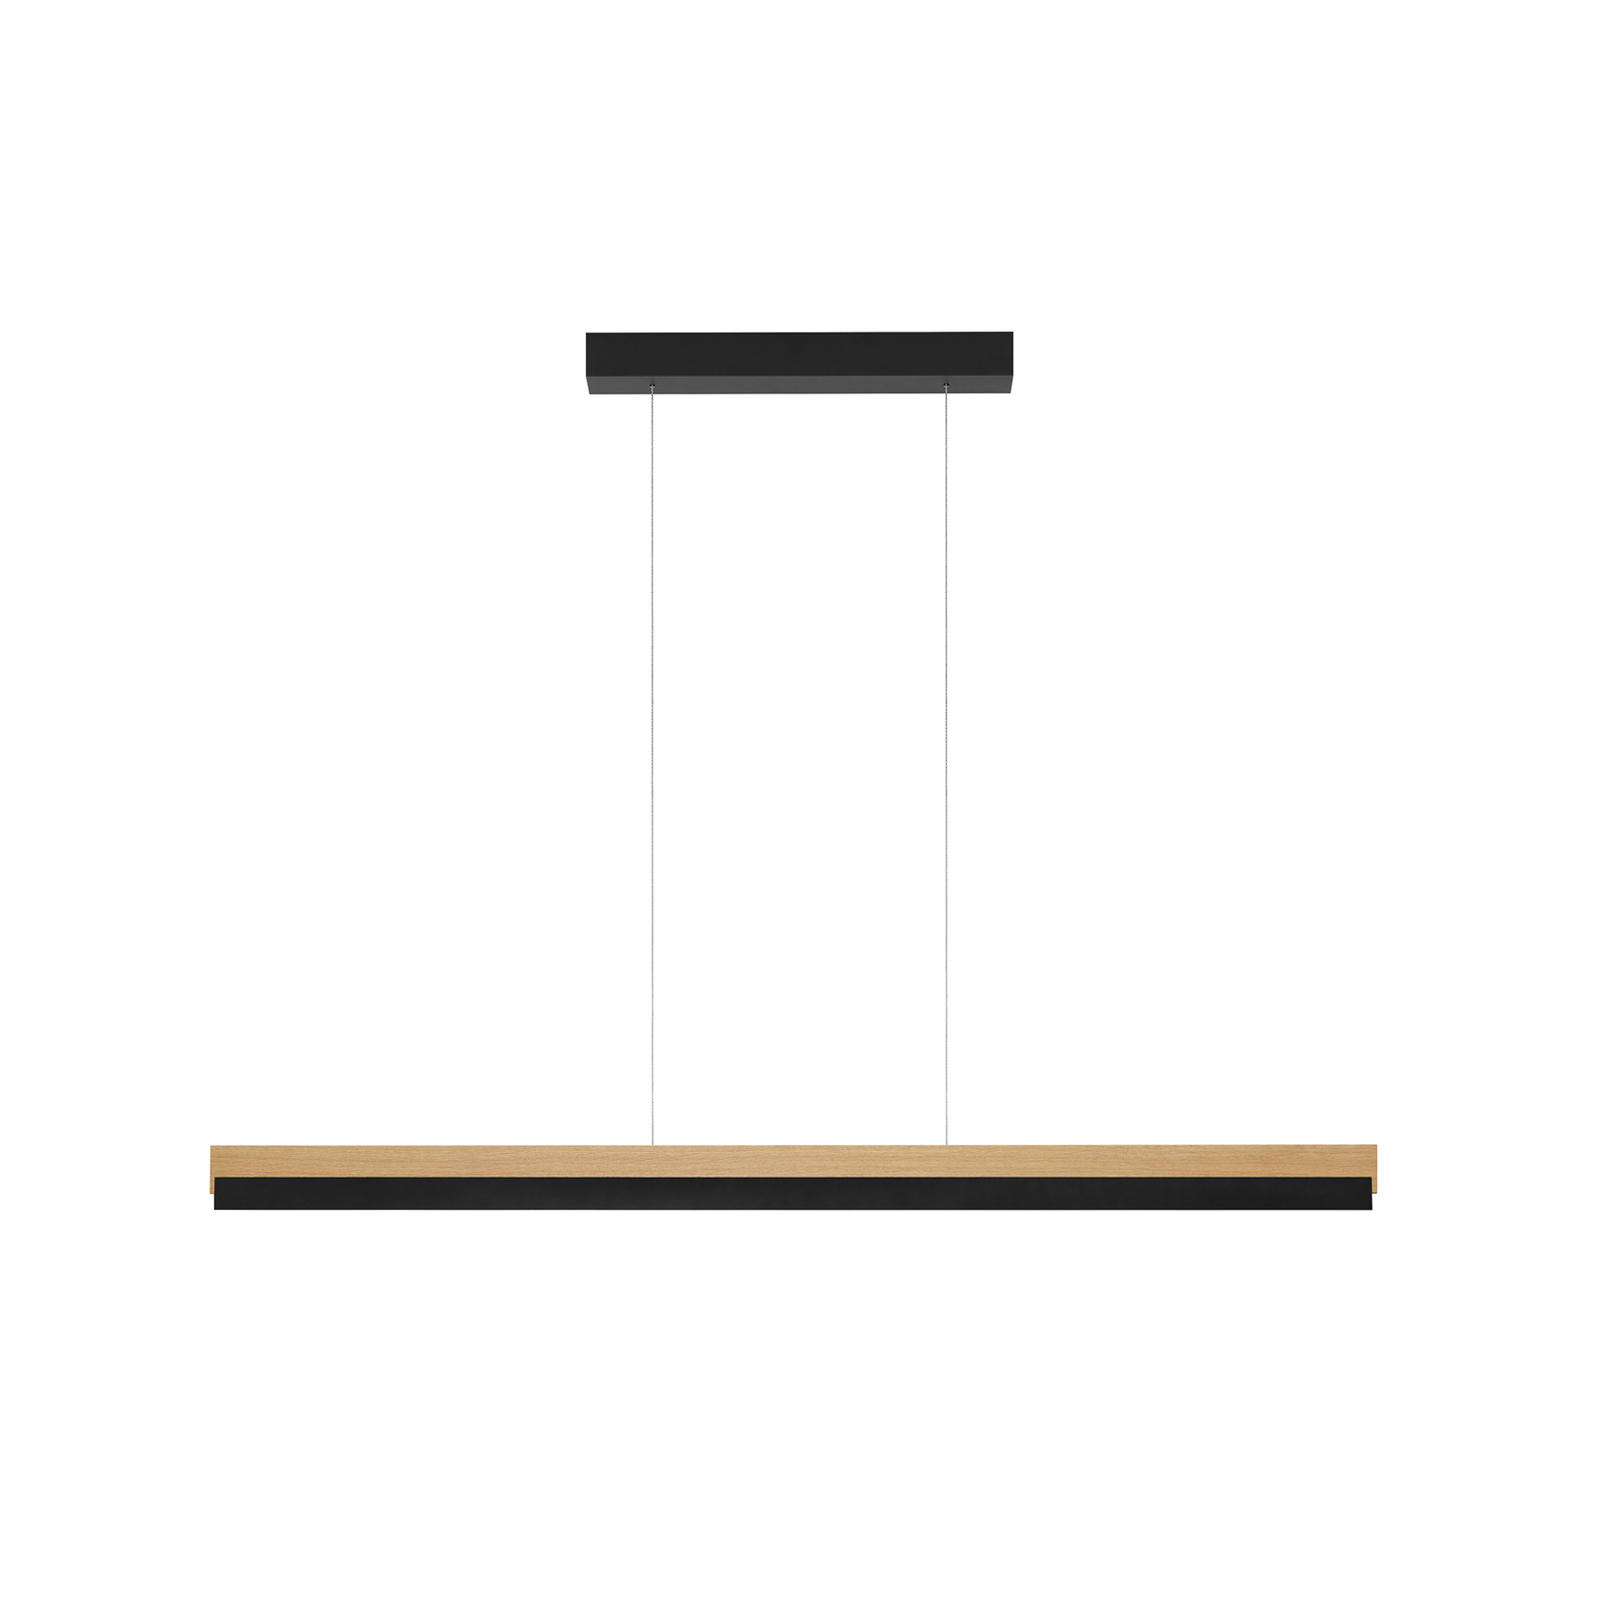 Quitani hanglamp Keijo, zwart/eiken, lengte 123 cm